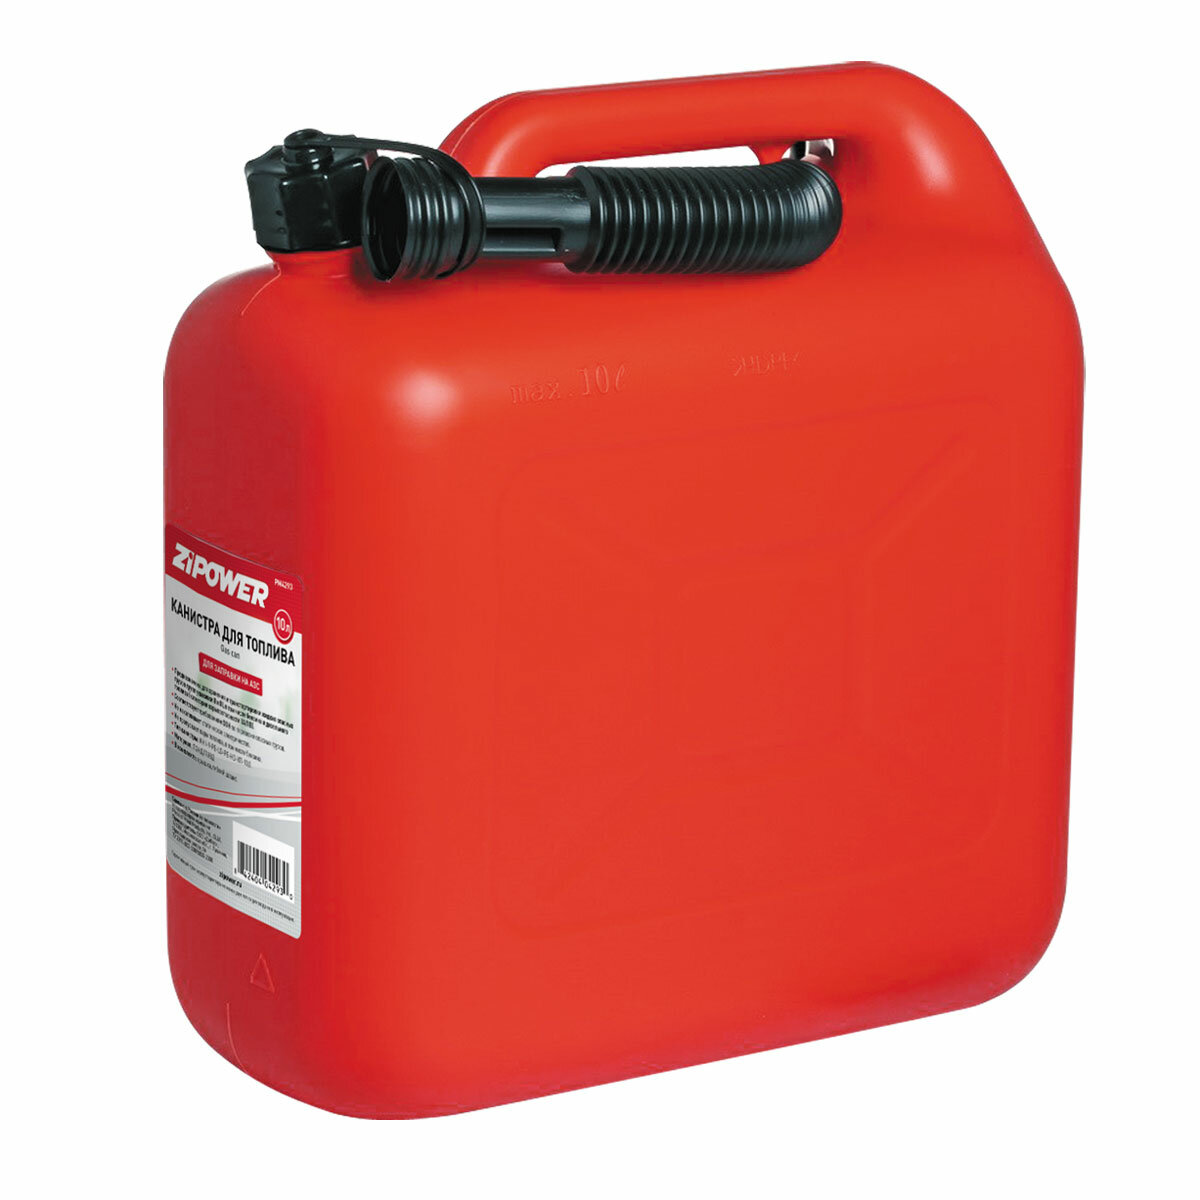 Канистра для топлива ZIPOWER (10 л.) Цвет - красный. PM4293